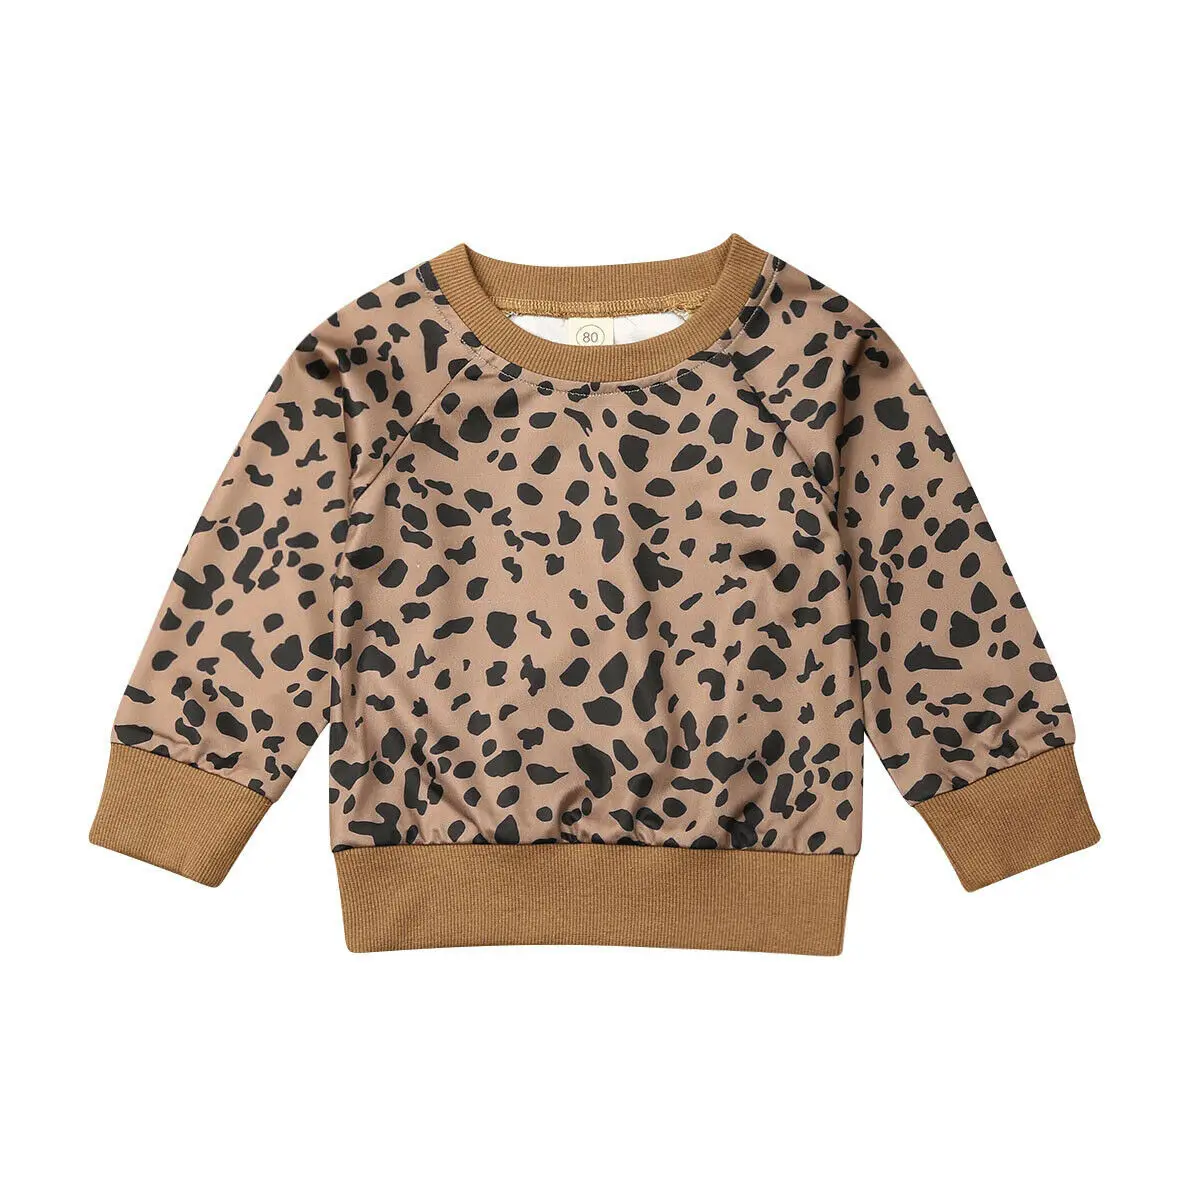 Пуловер свитшот худи леопардовой расцветки с длинными рукавами и круглым